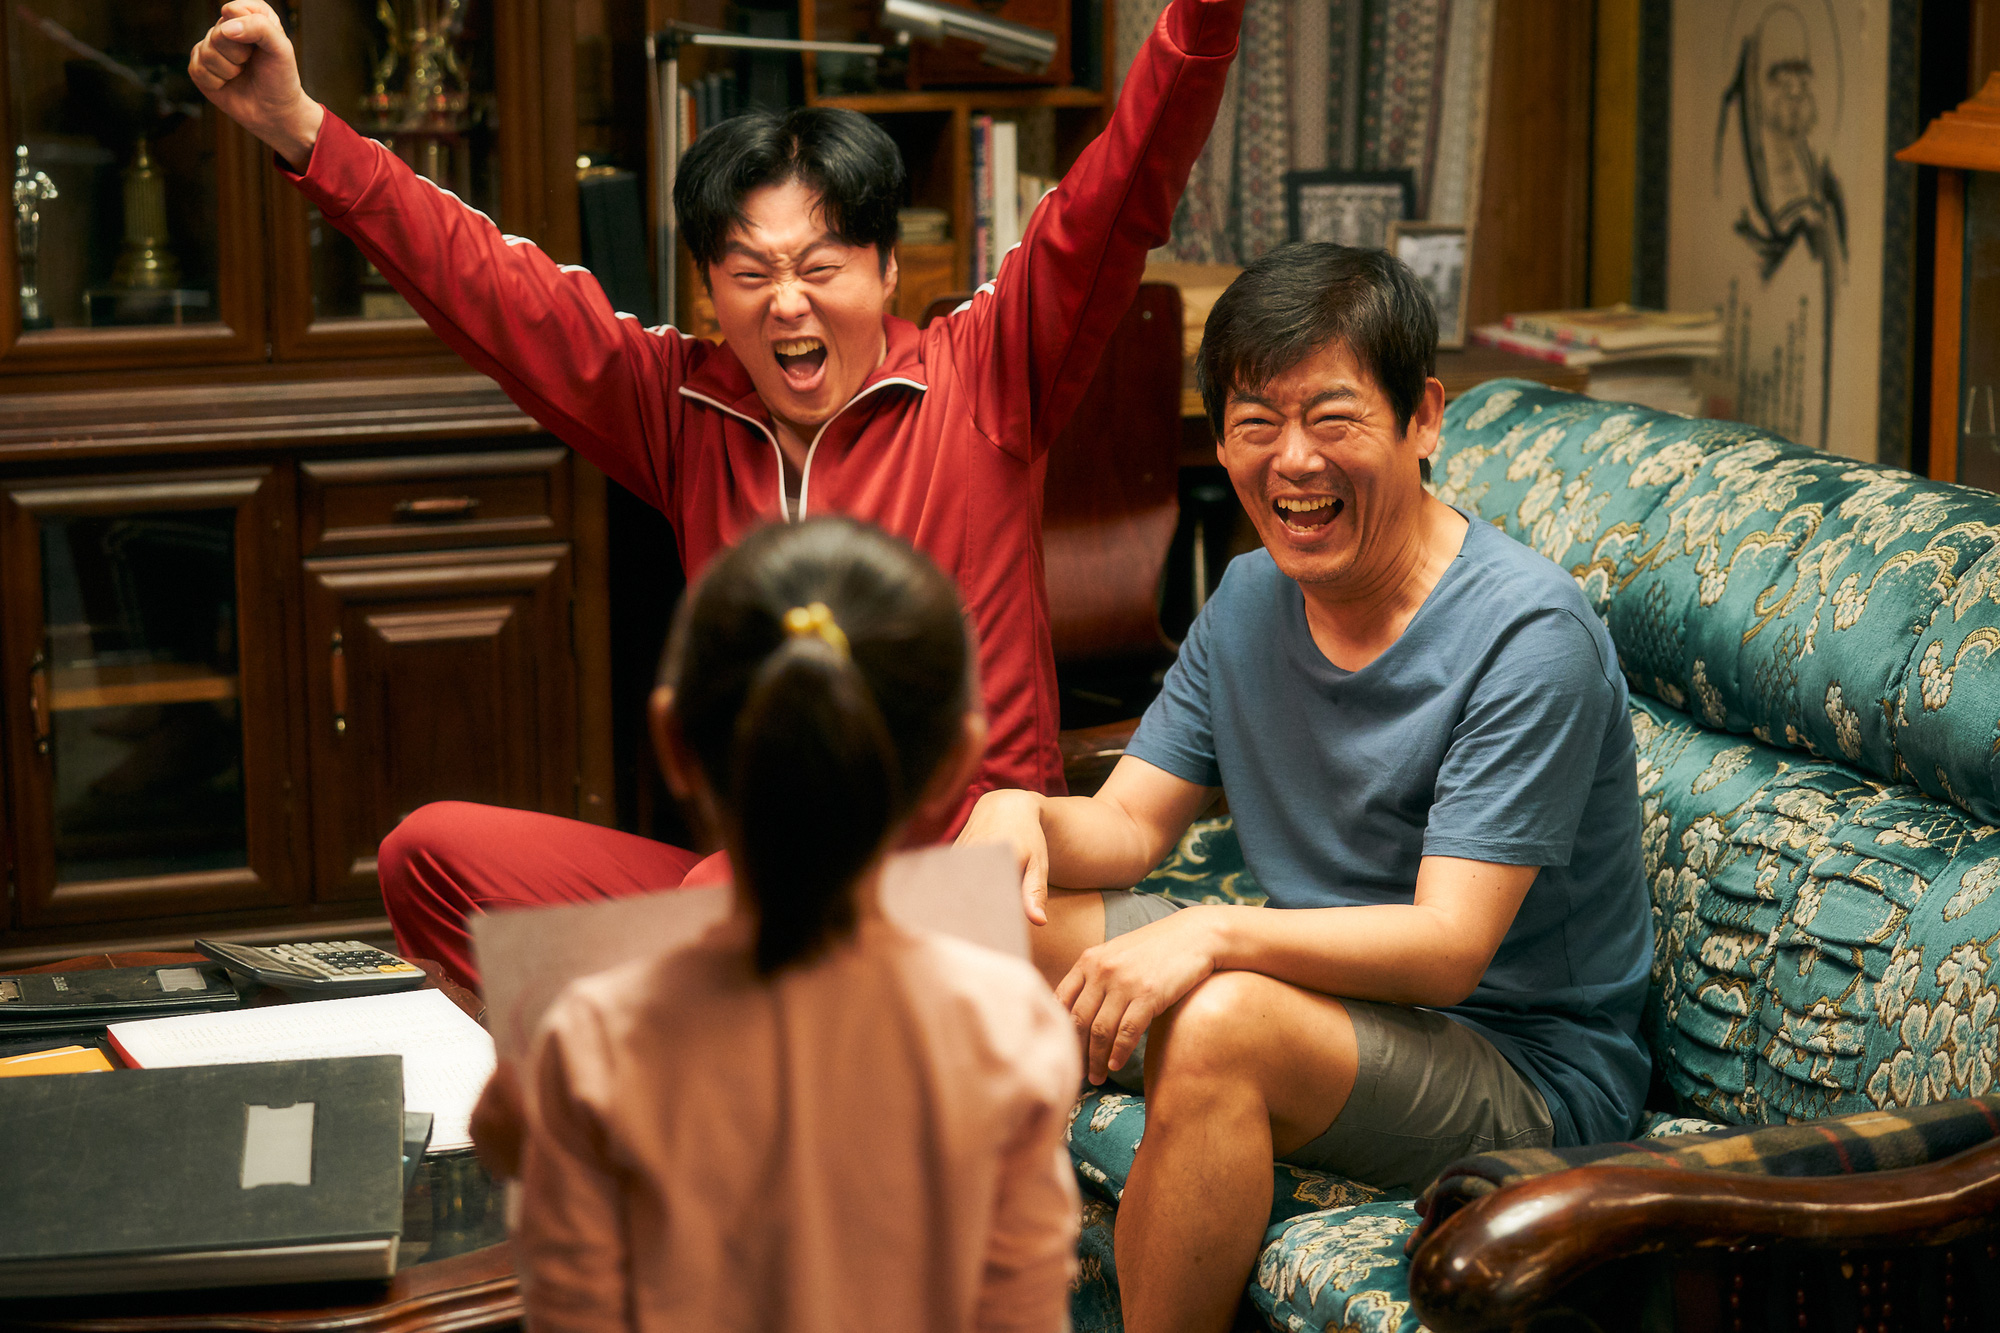 Cục Nợ Hóa Cục Cưng: Phim gia đình “hút nước mắt”, Ha Ji Won khóc lụt cả màn hình, càng xem càng thấy nhớ Reply 1997? - Ảnh 5.